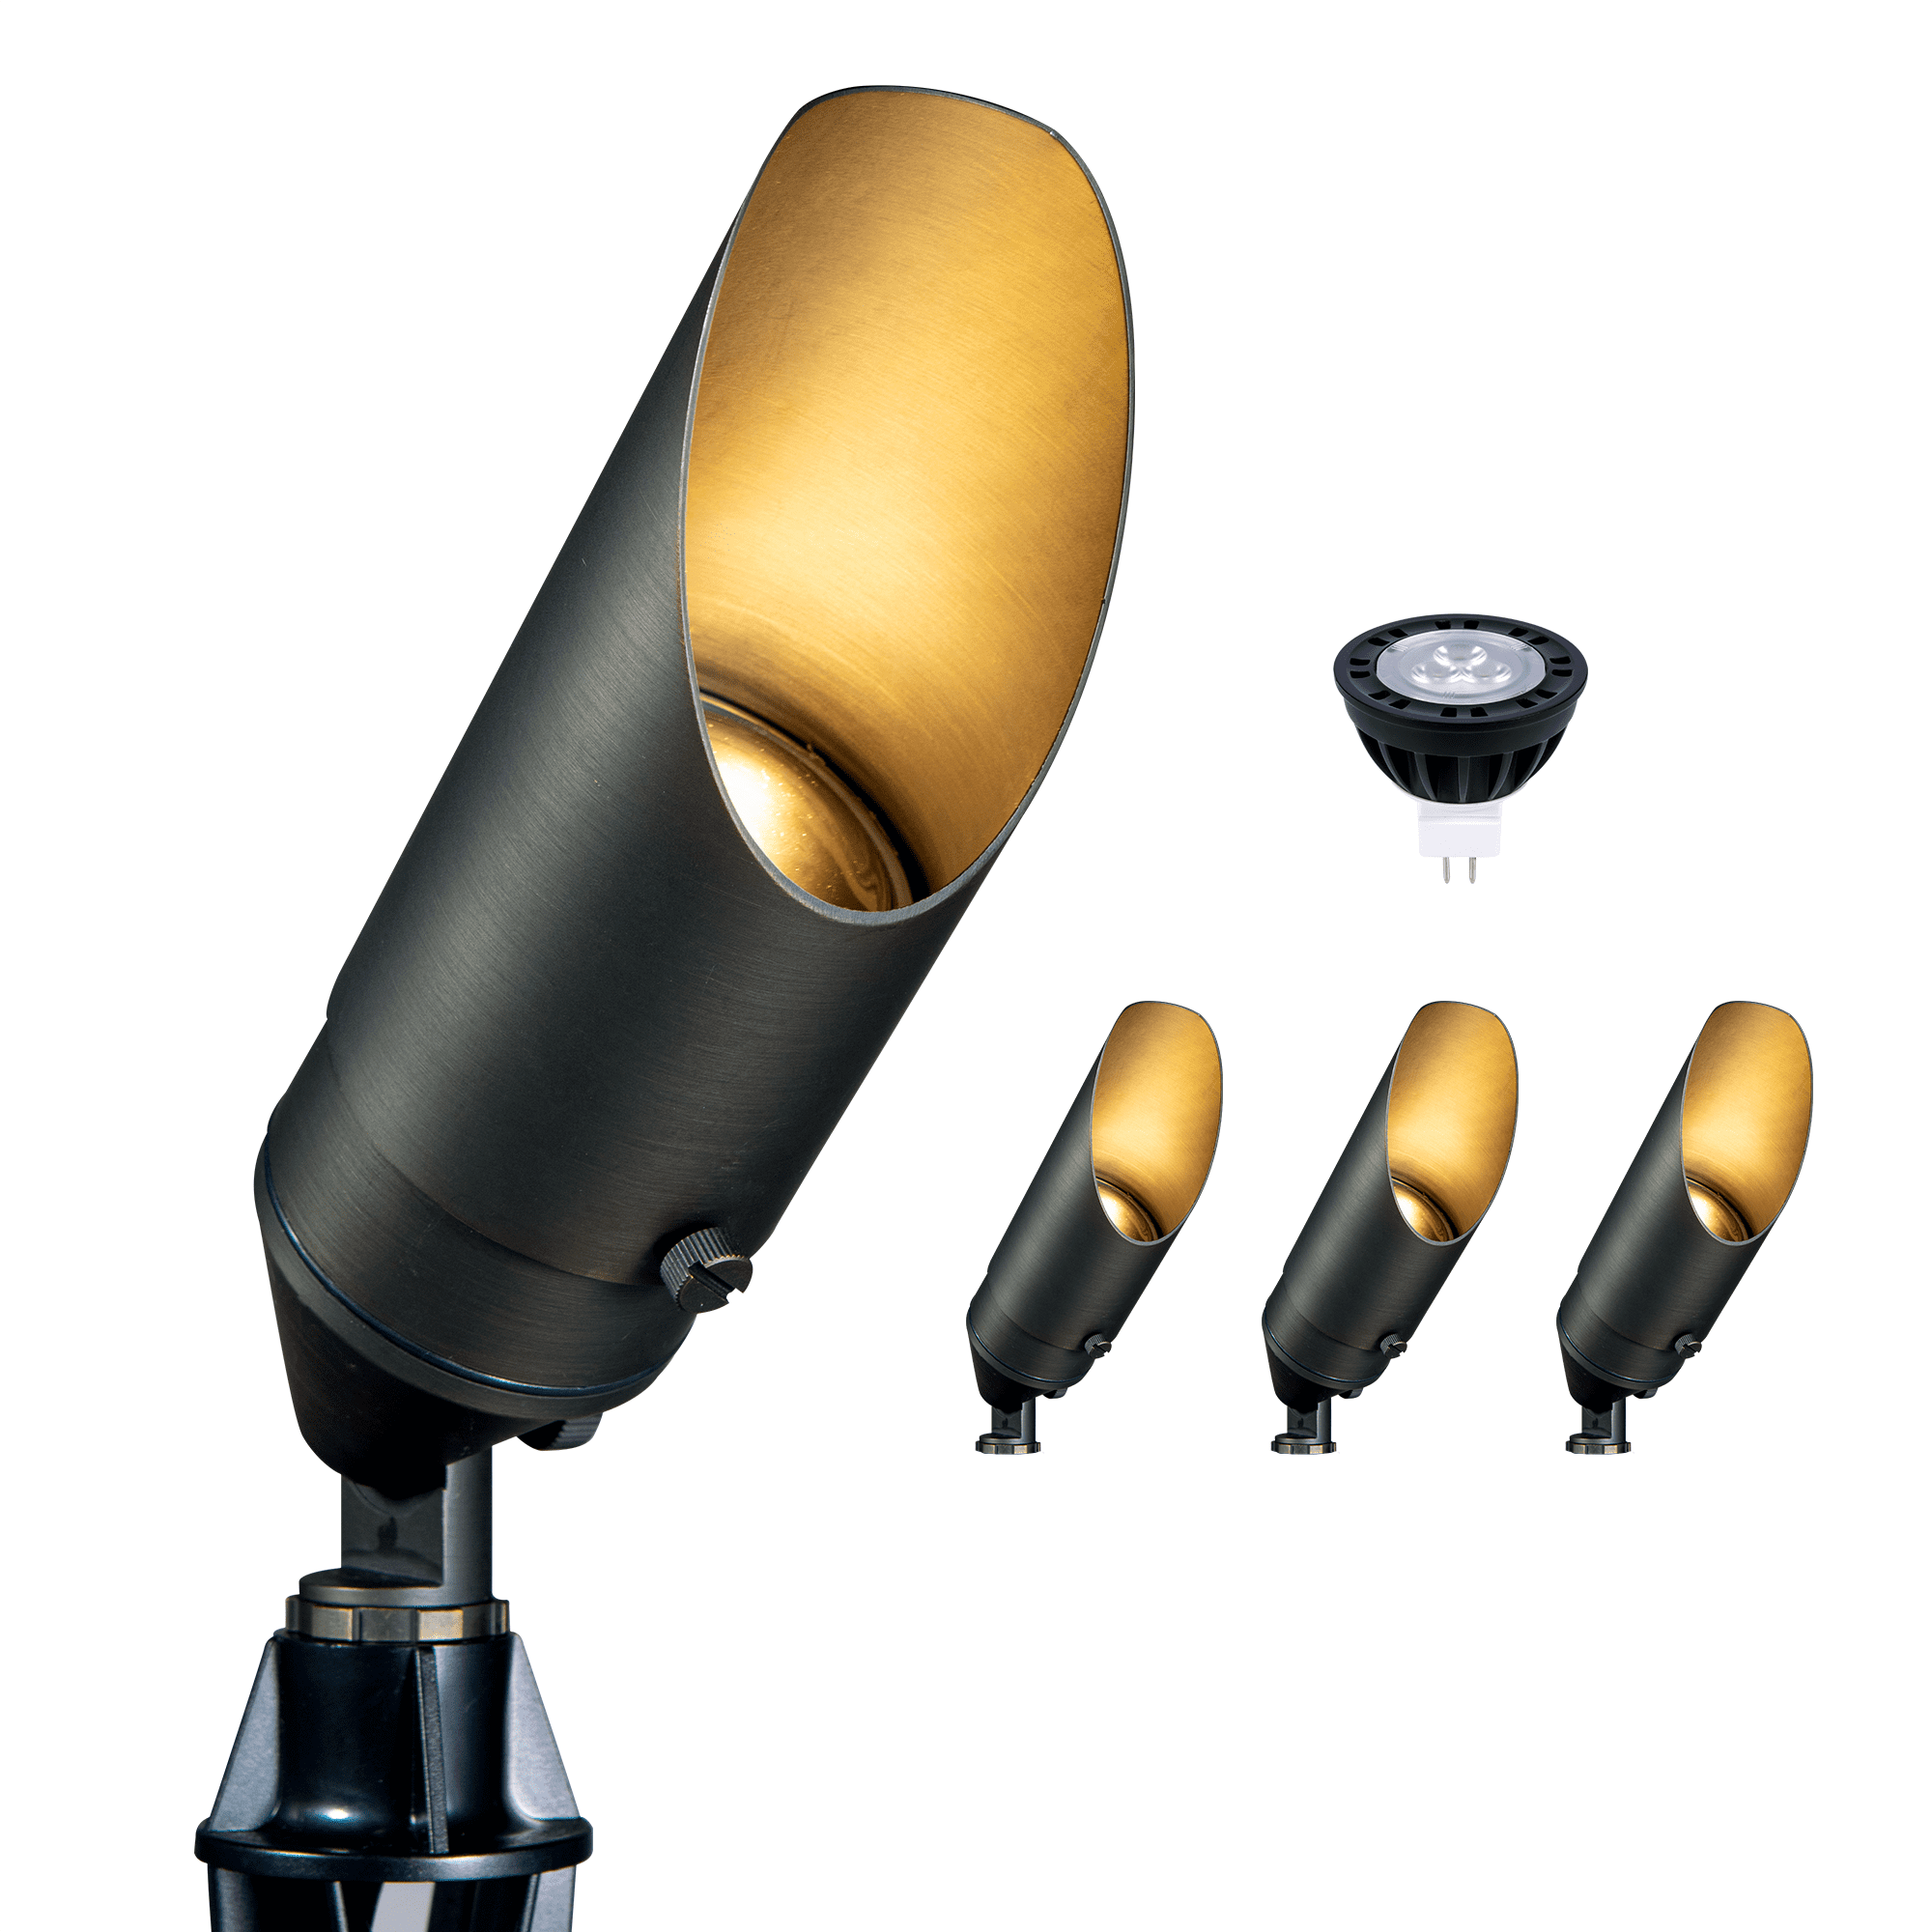 RuggedGrade Solid Brass Lyla S Series LED Landscape Light - 5W 2700K LED MR16 Bulb Included - 12V DC Low Voltage Lights 23-105